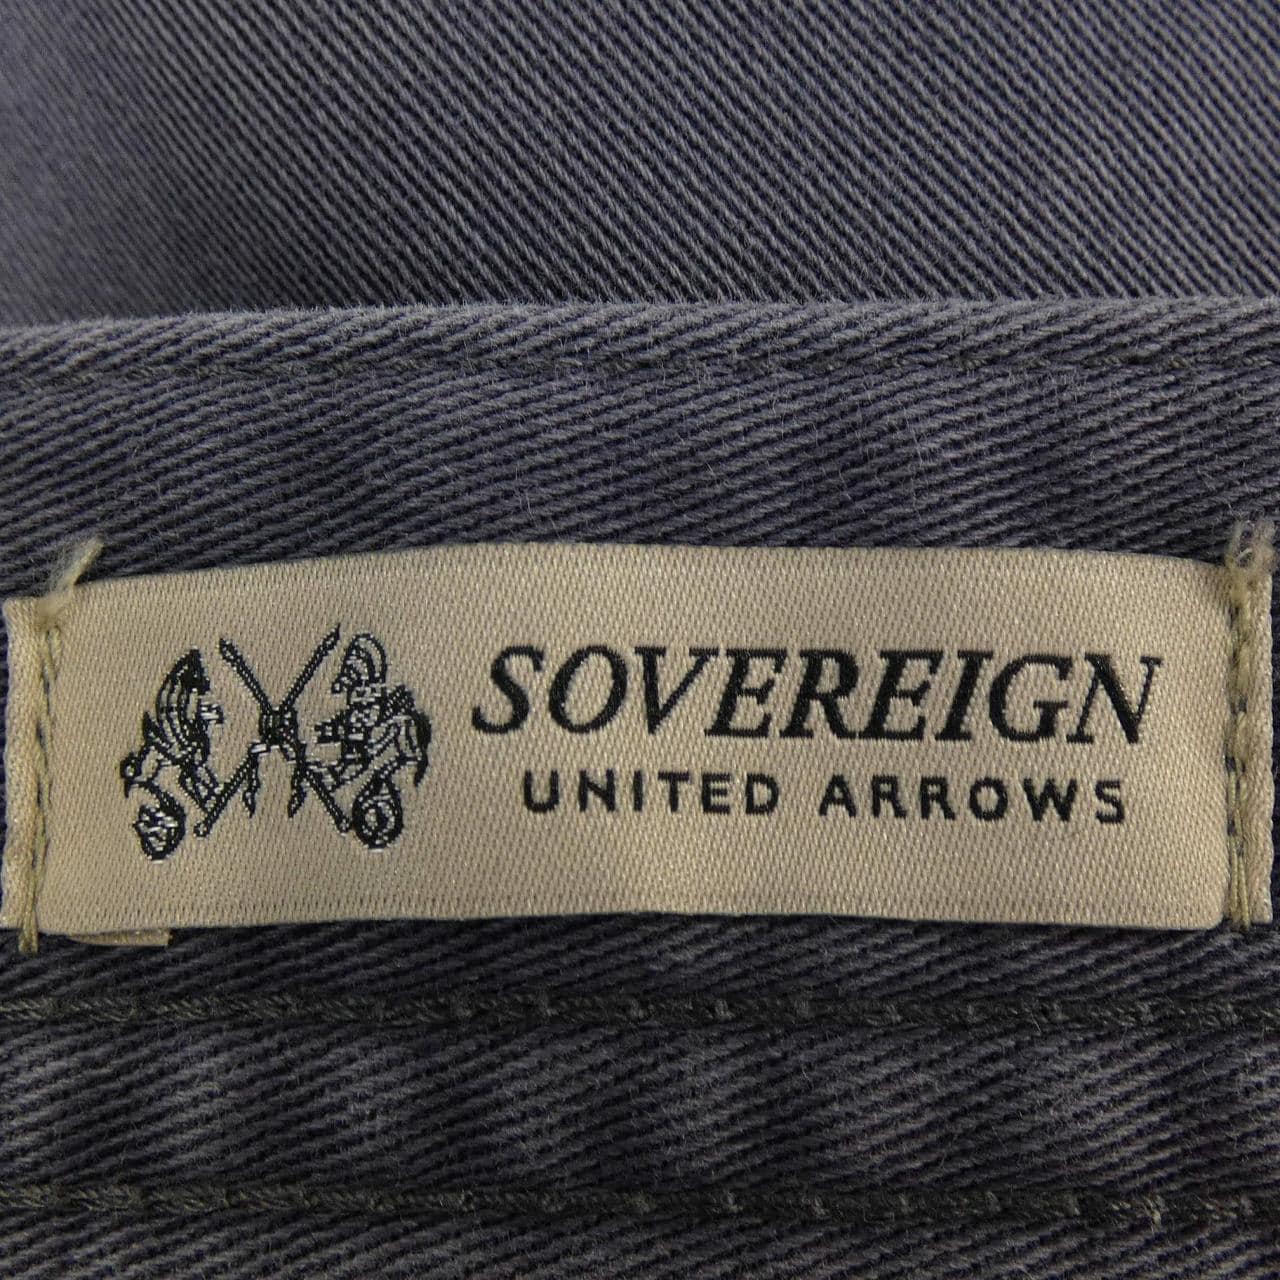 Sovereign褲子